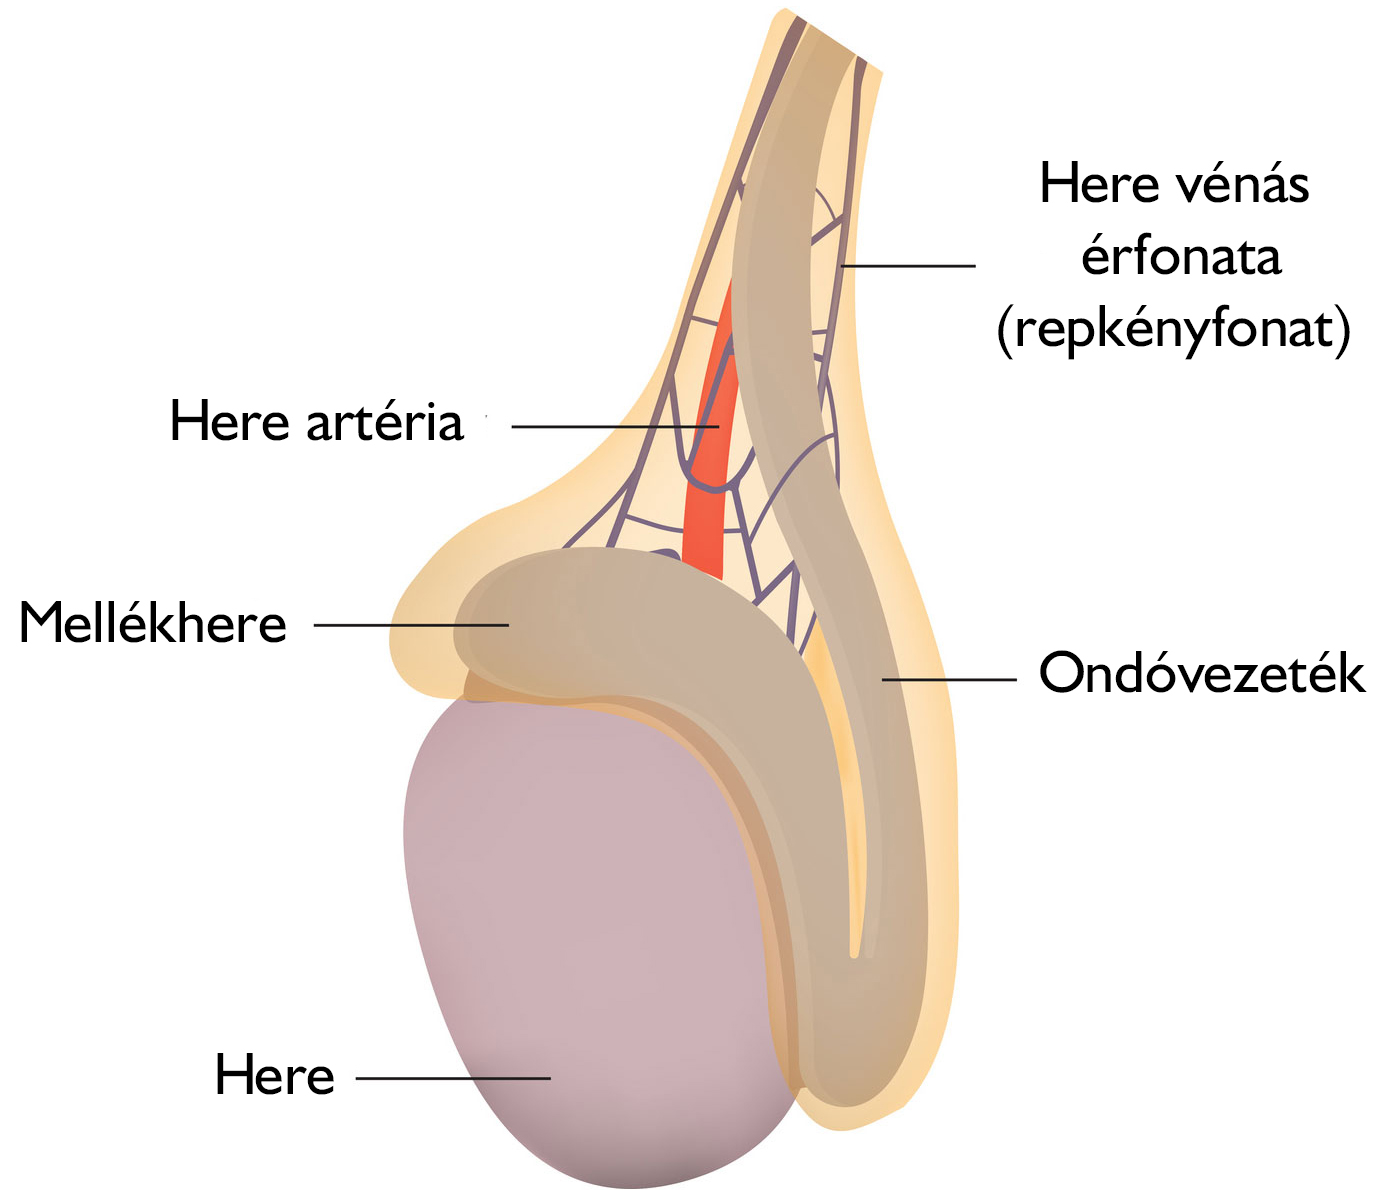 A here anatómiája